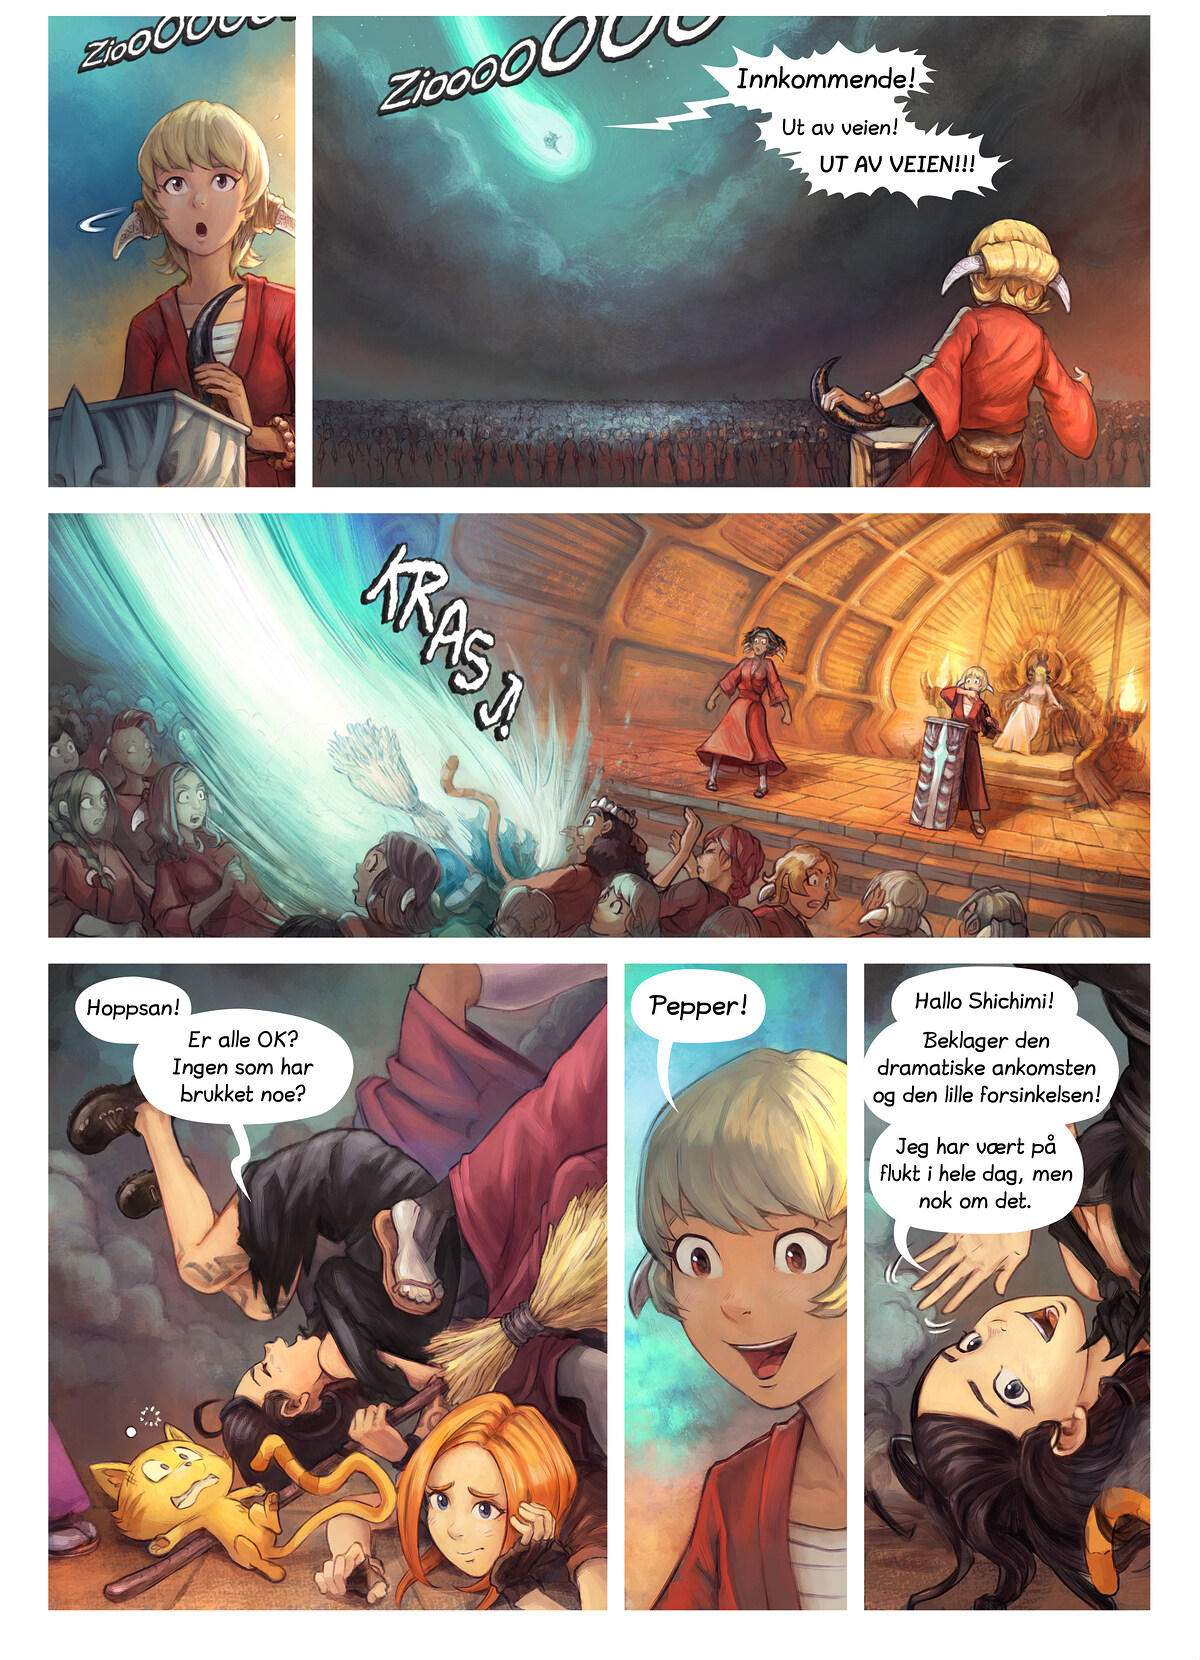 Episode 34: Shichimi slås til ridder, Page 2